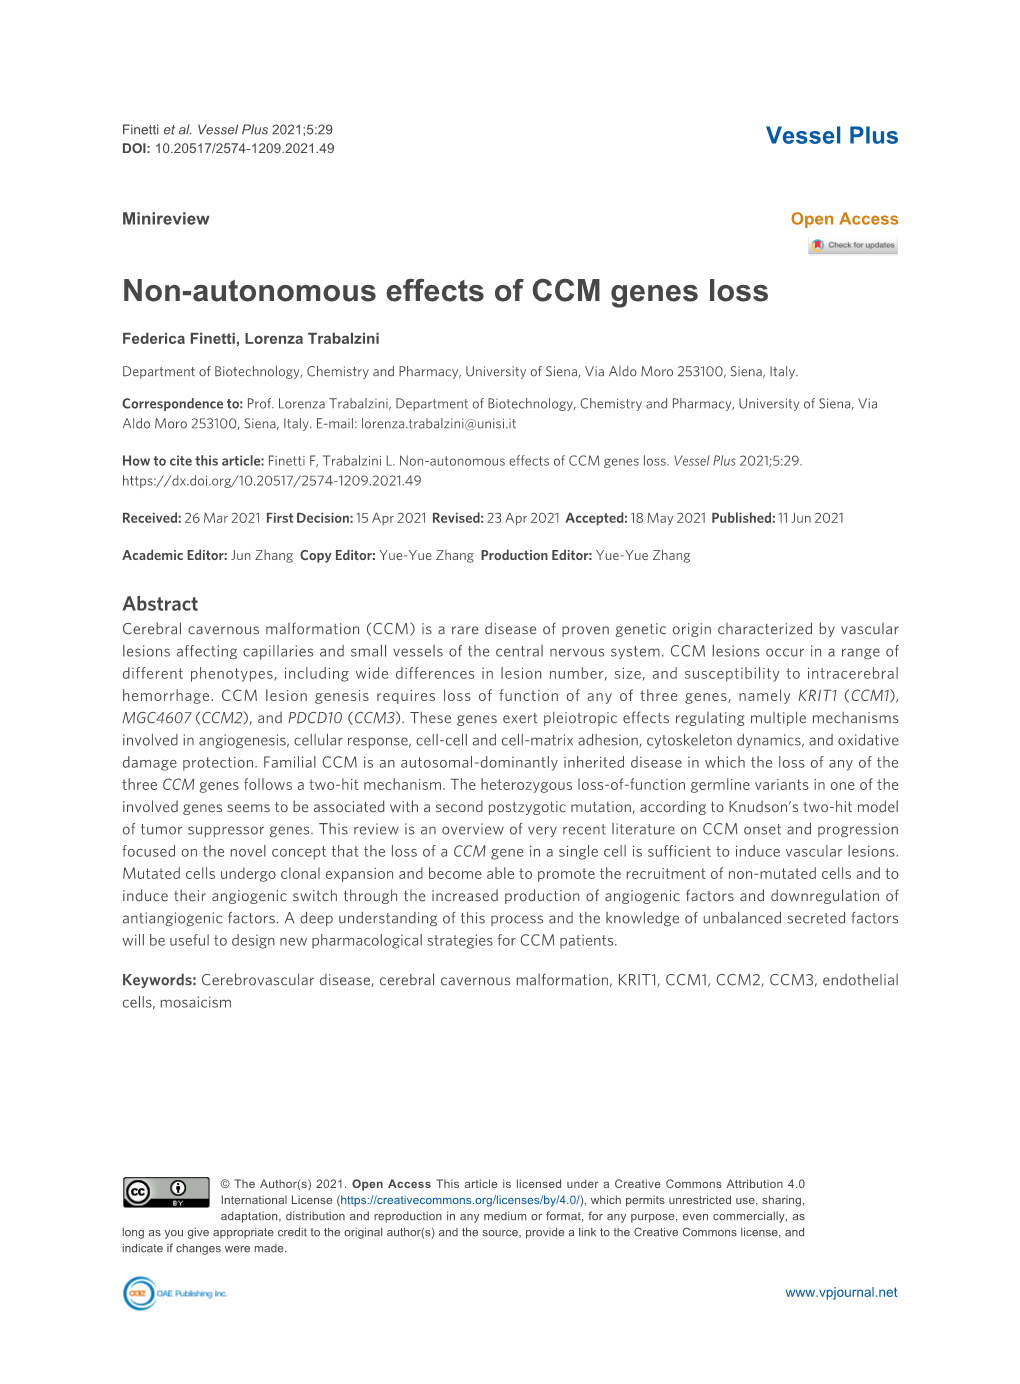 Non-Autonomous Effects of CCM Genes Loss